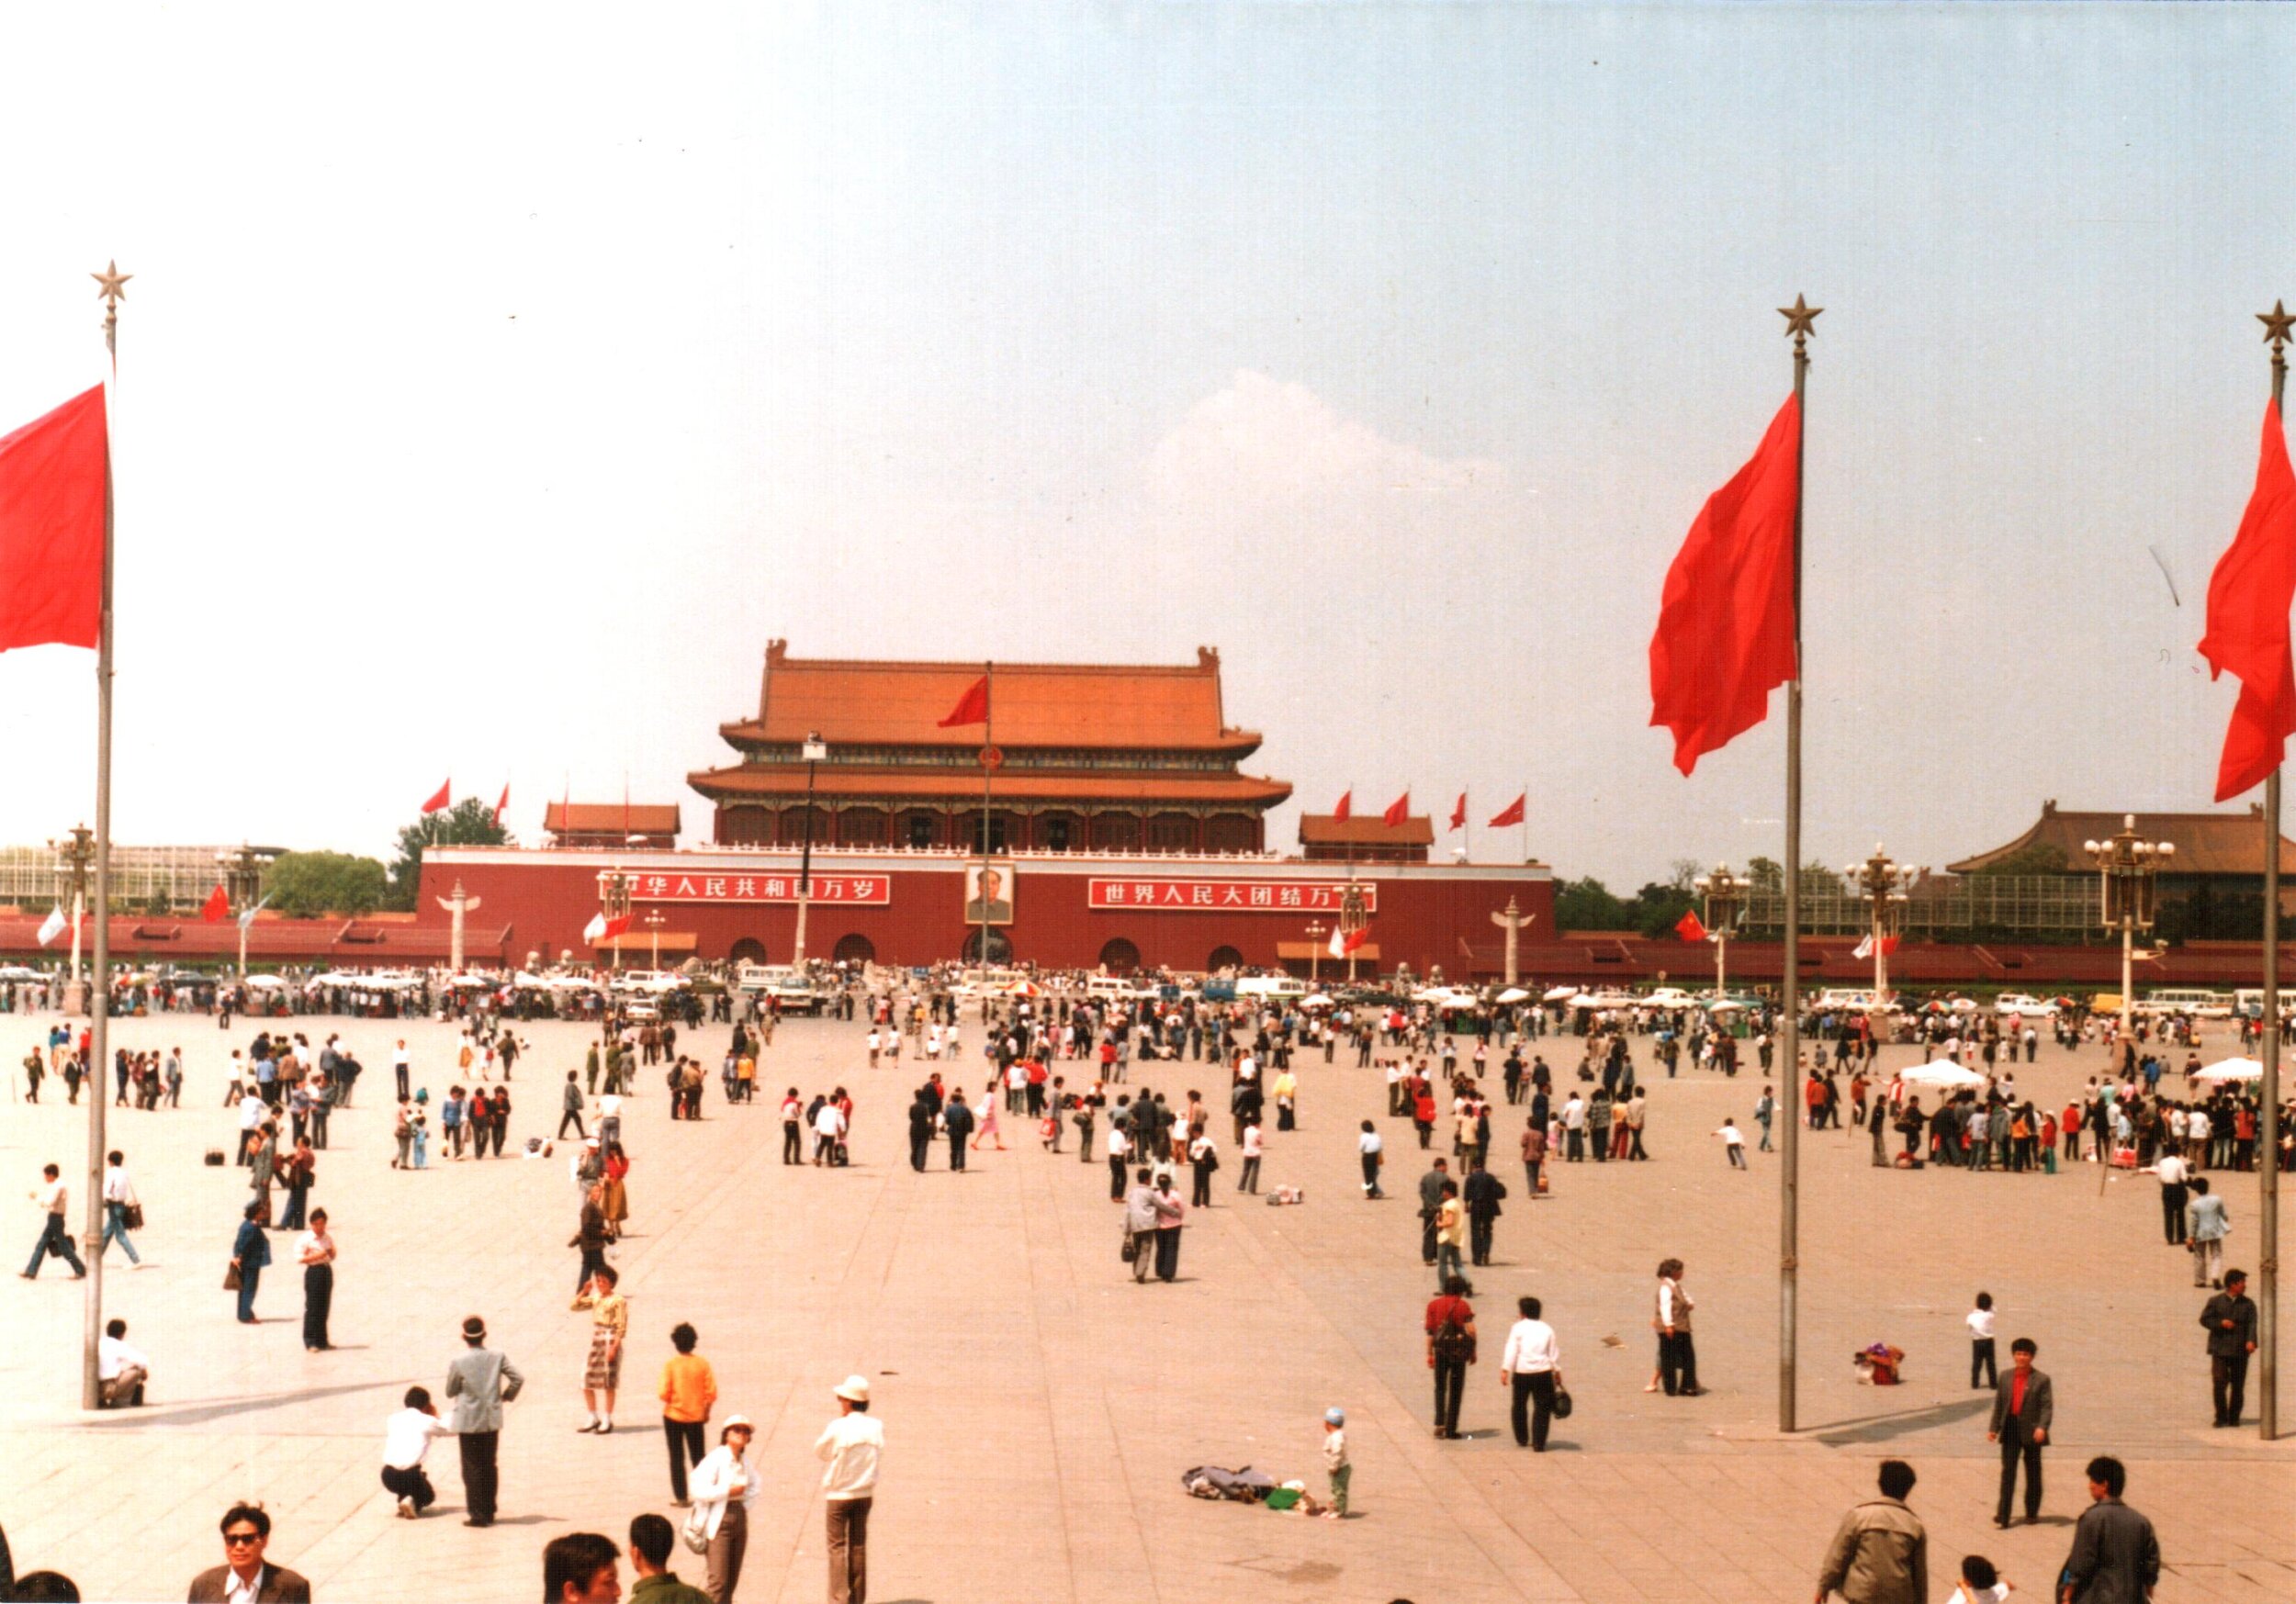 Tiananmen_Square,_Beijing,_China_1988_(1).jpg